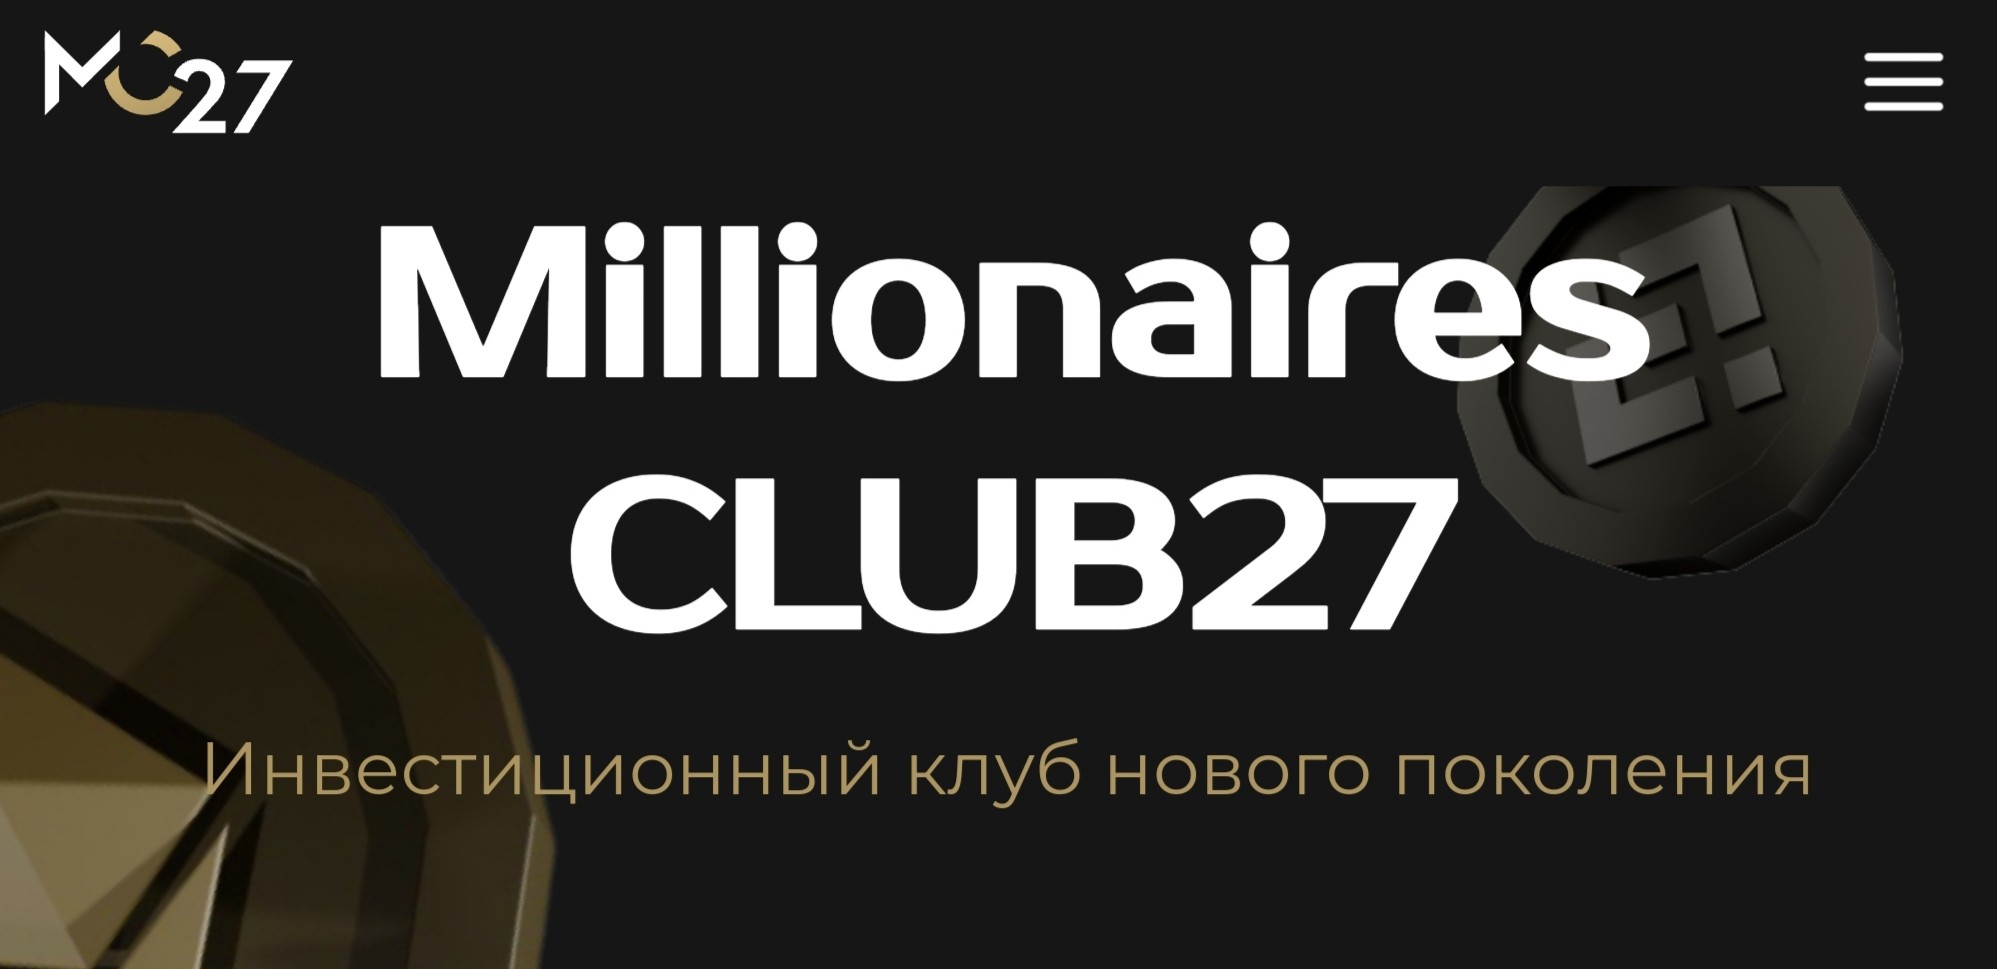 millionairesclub27 обзор проекта